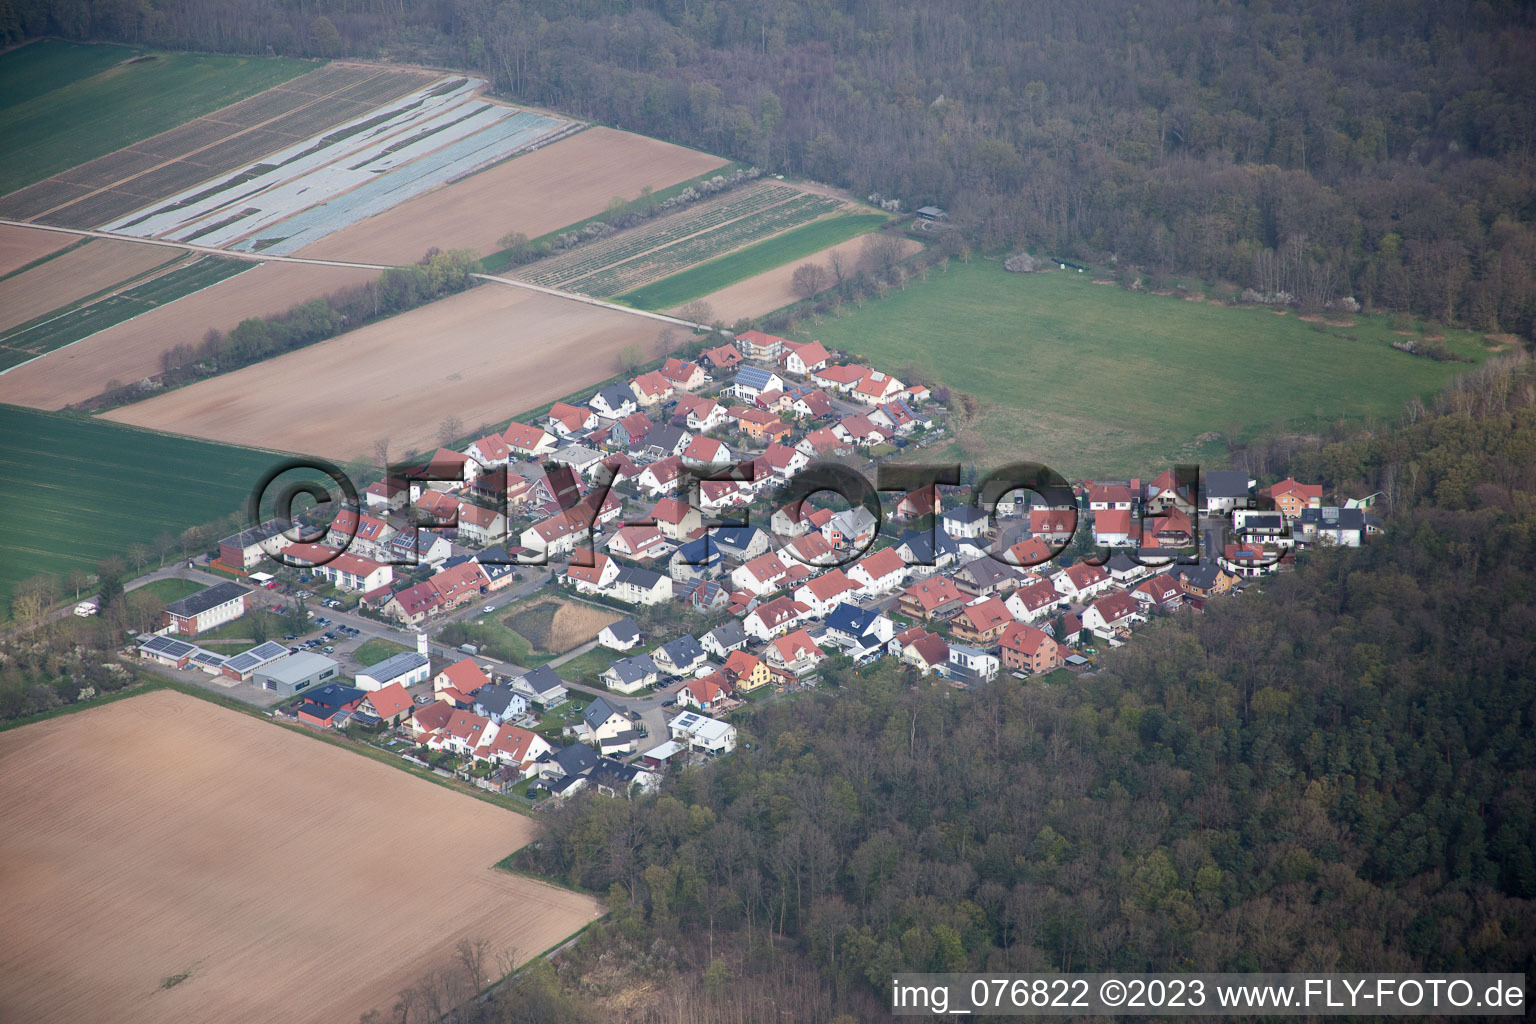 Vorderlohe in Schwegenheim in the state Rhineland-Palatinate, Germany